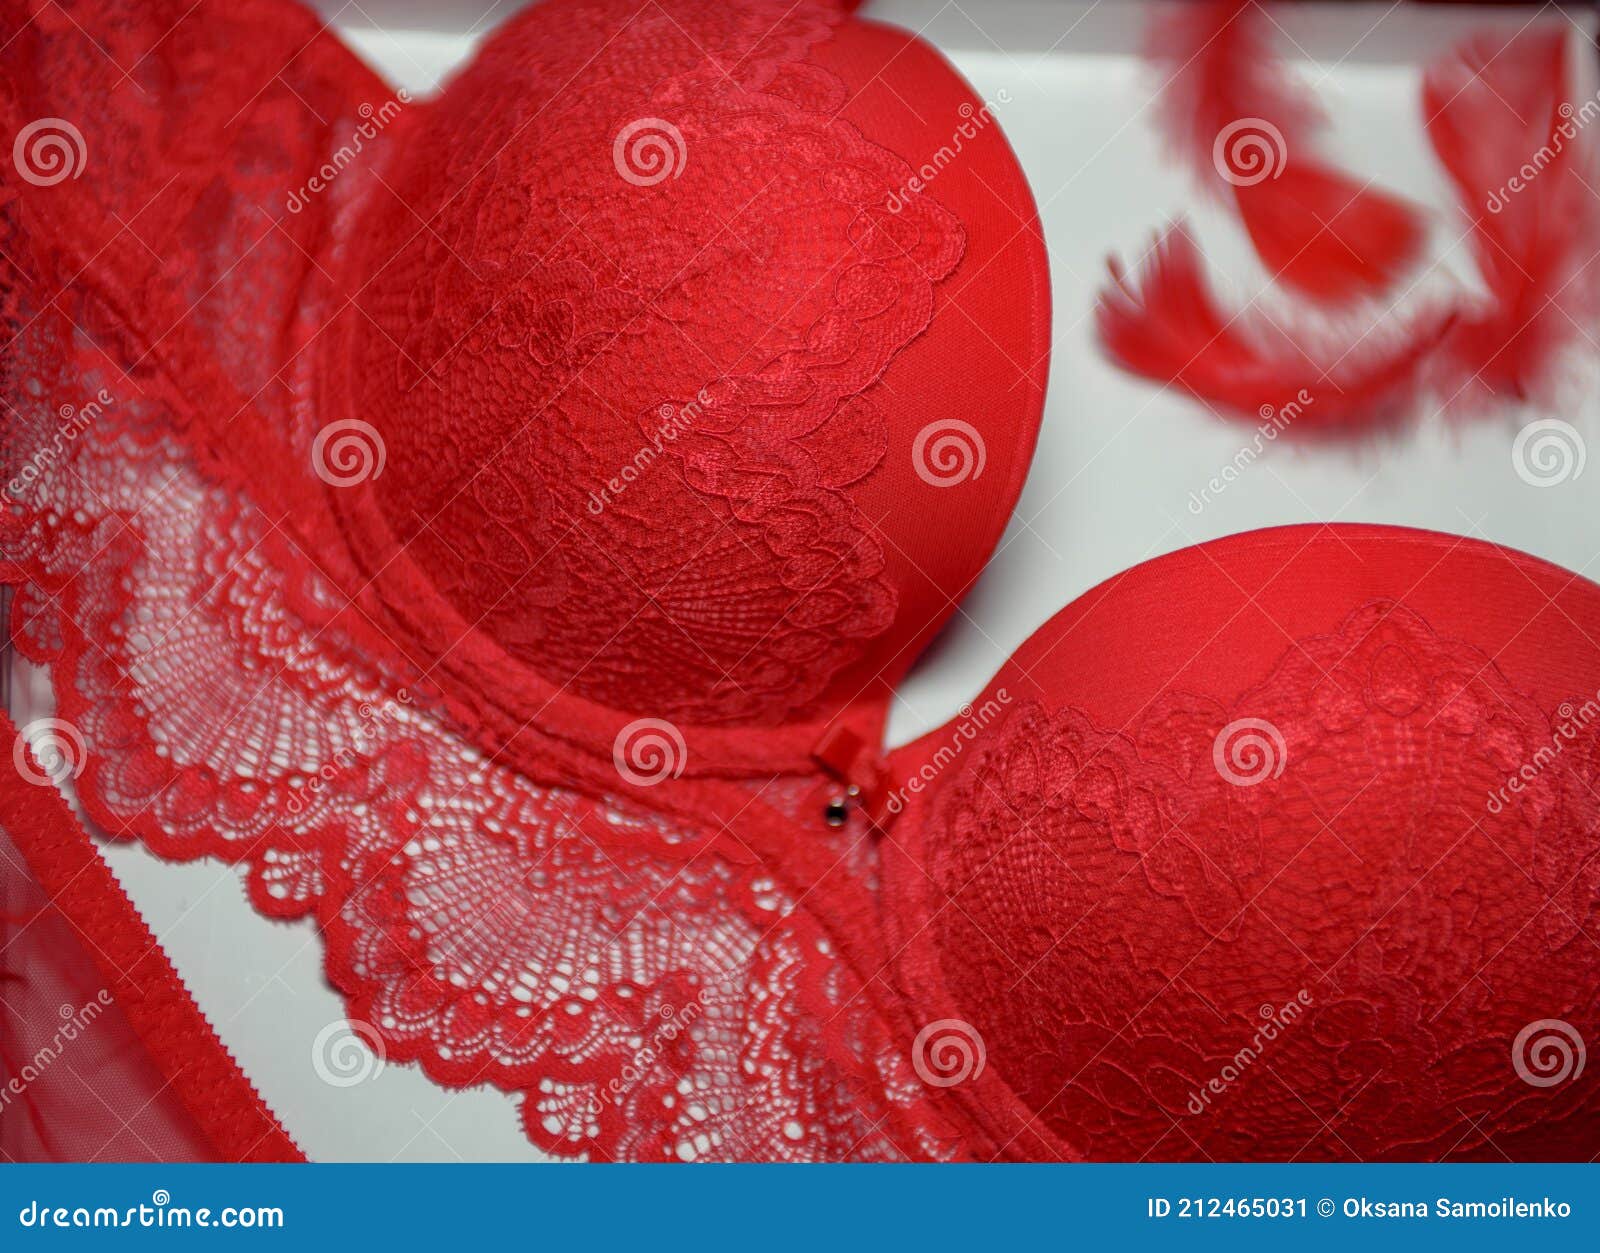 Lencería Sexy De Color Rojo Sobre Fondo Blanco. Ropa Interior Para Mujeres. De Encaje Imagen de archivo - de escarlata, blanco: 212465031